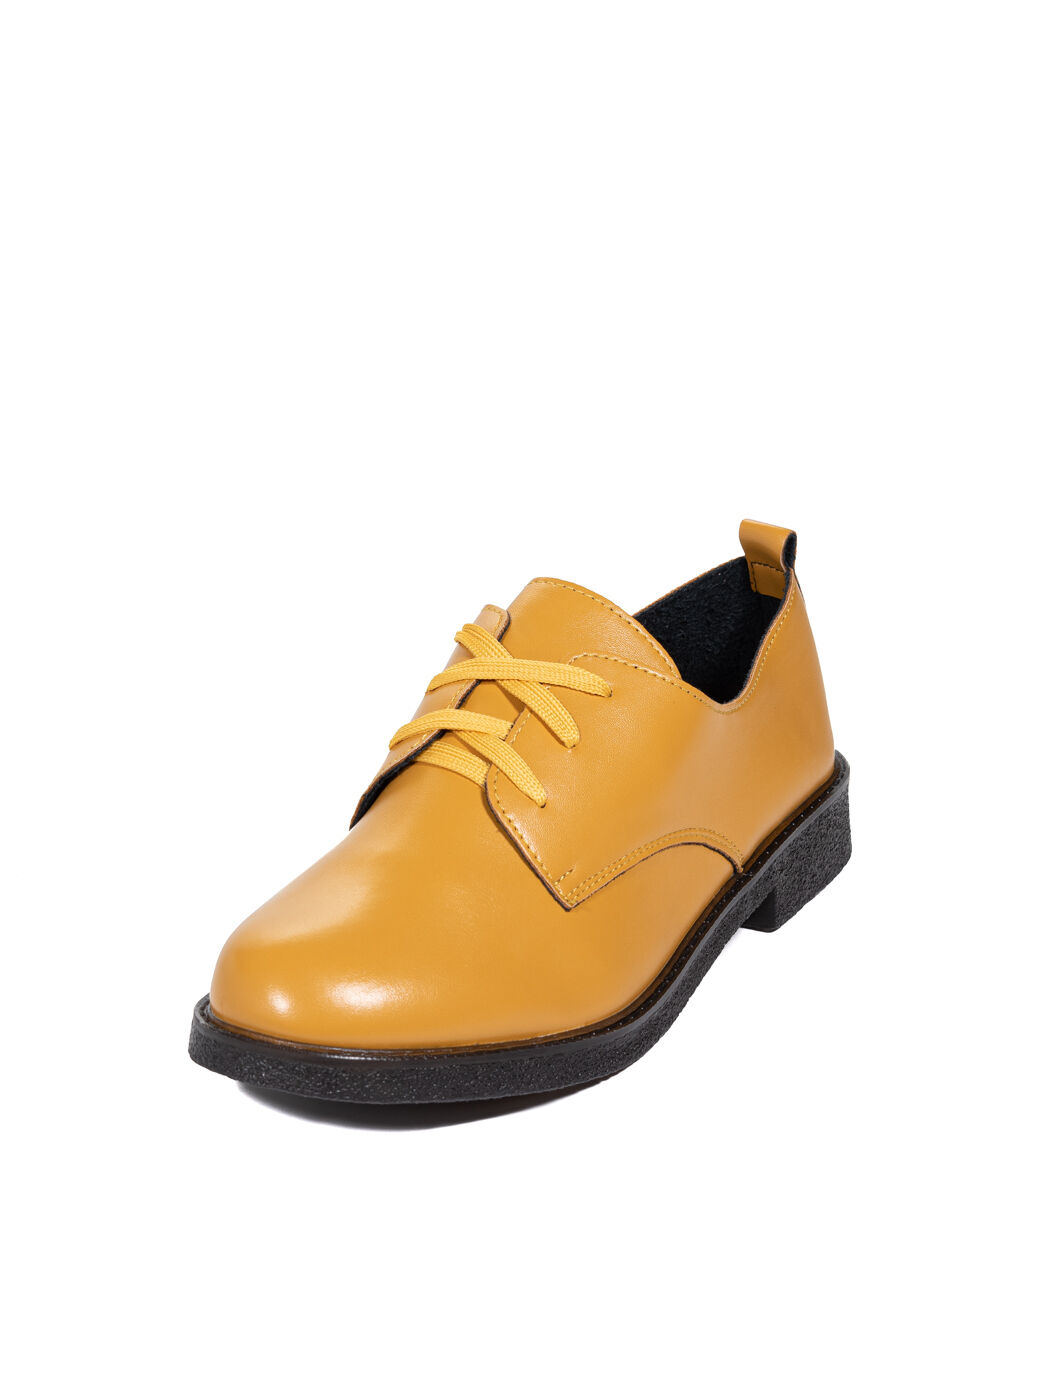 Туфли Oxfords женские жёлтые экокожа каблук устойчивый демисезон 3M вид 2